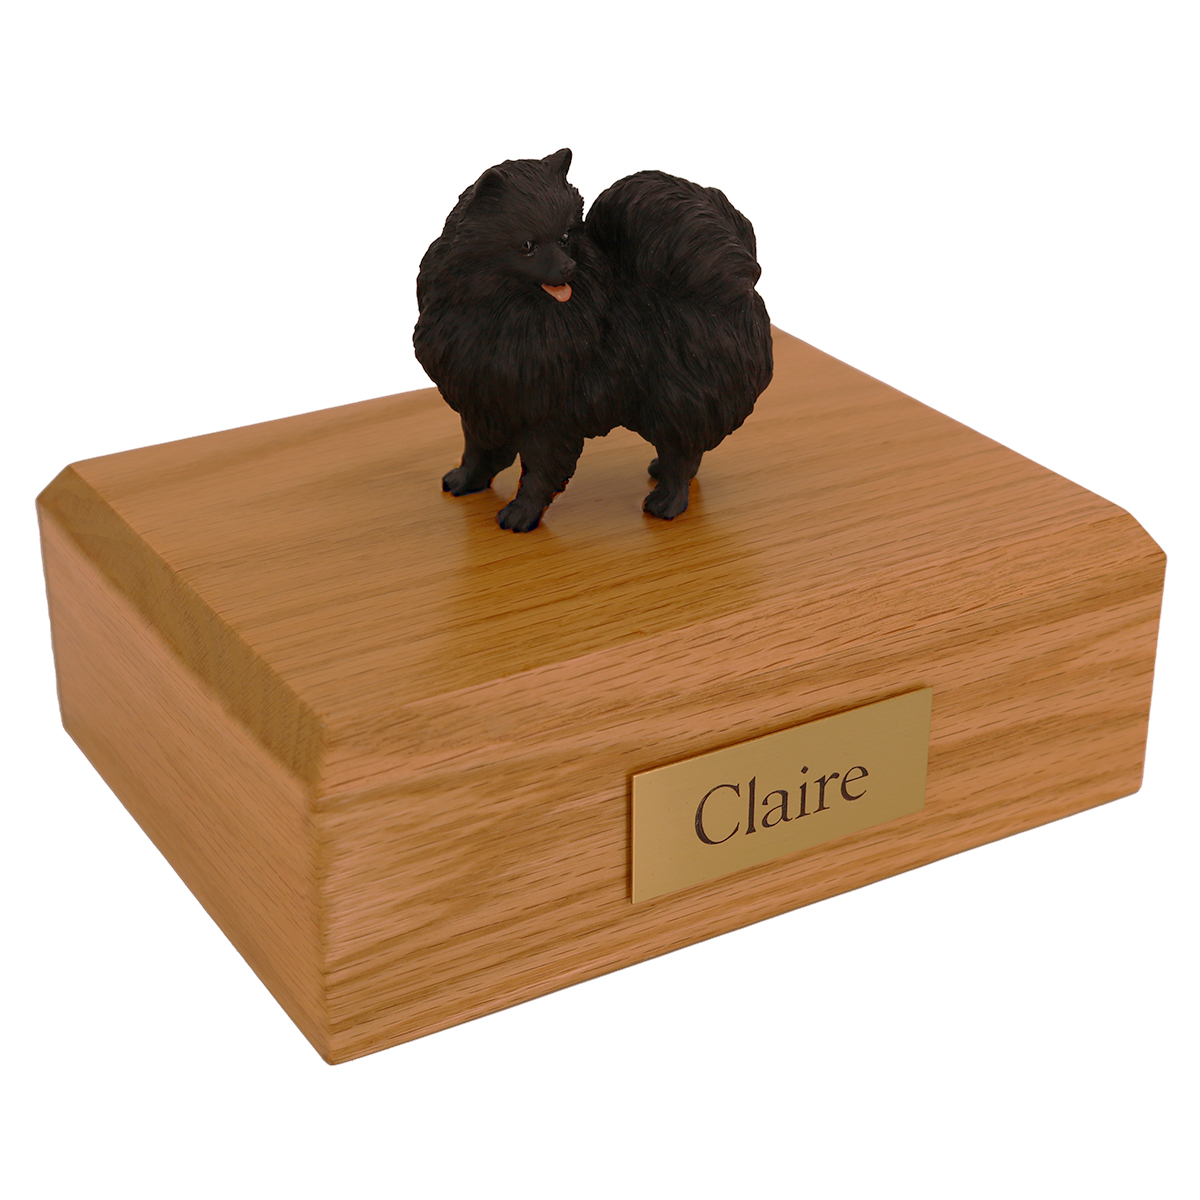 Dog, Pomeranian, Black - Figurine Urn